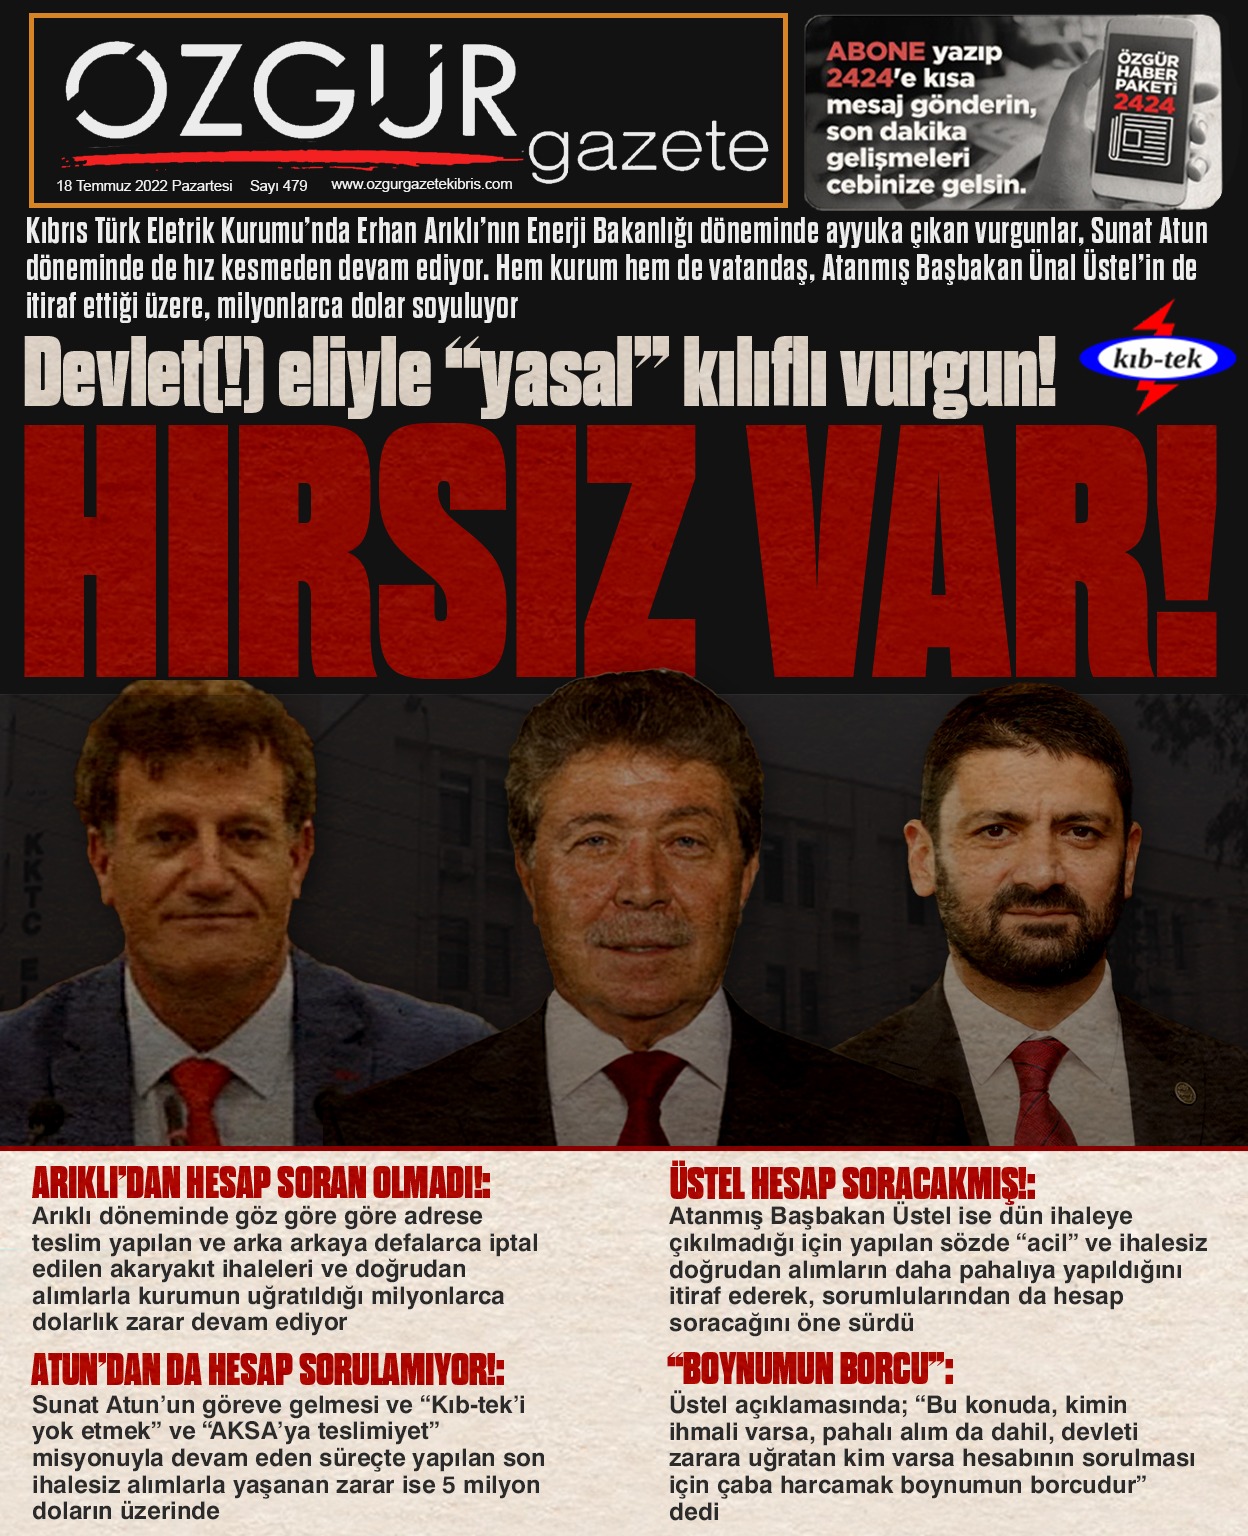 ozgur_gazete_kibris_kib_tek_sunat_atun_erhan_arikli_unal_ustel